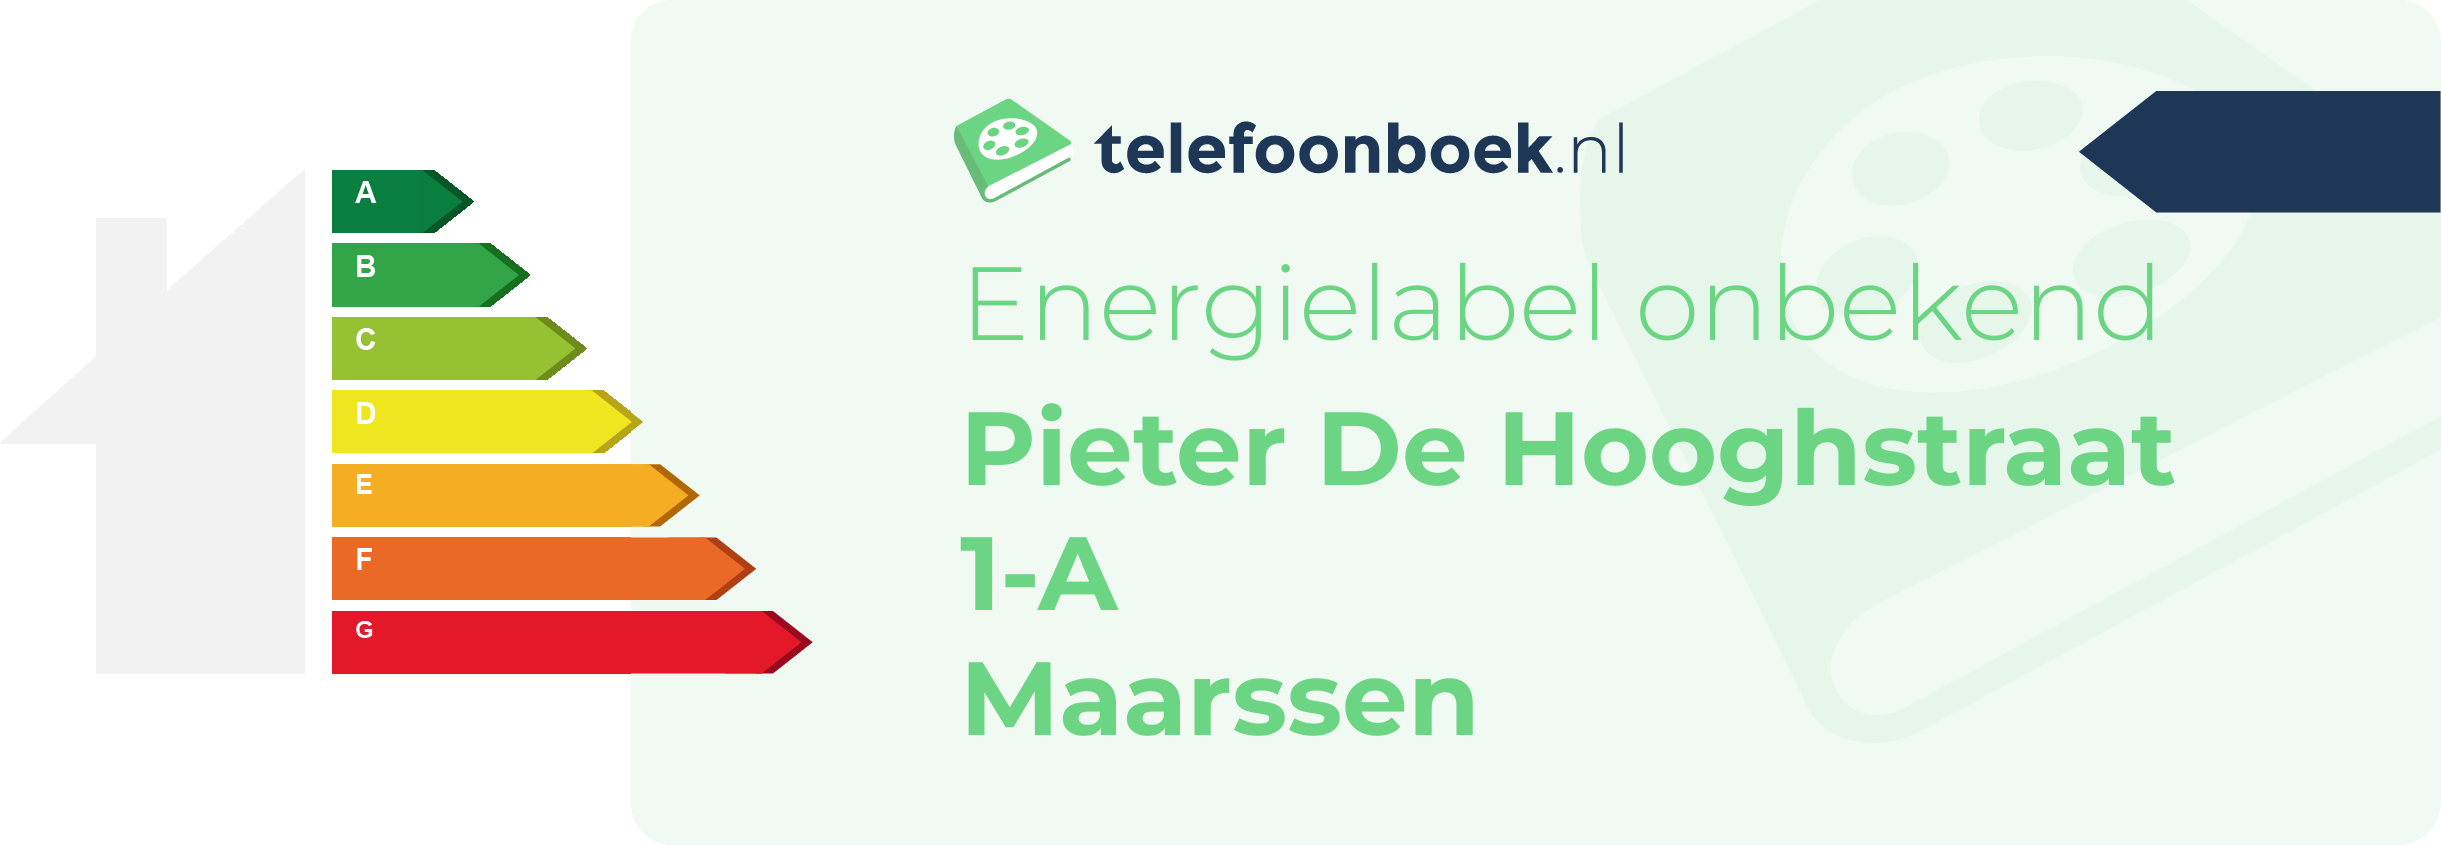 Energielabel Pieter De Hooghstraat 1-A Maarssen